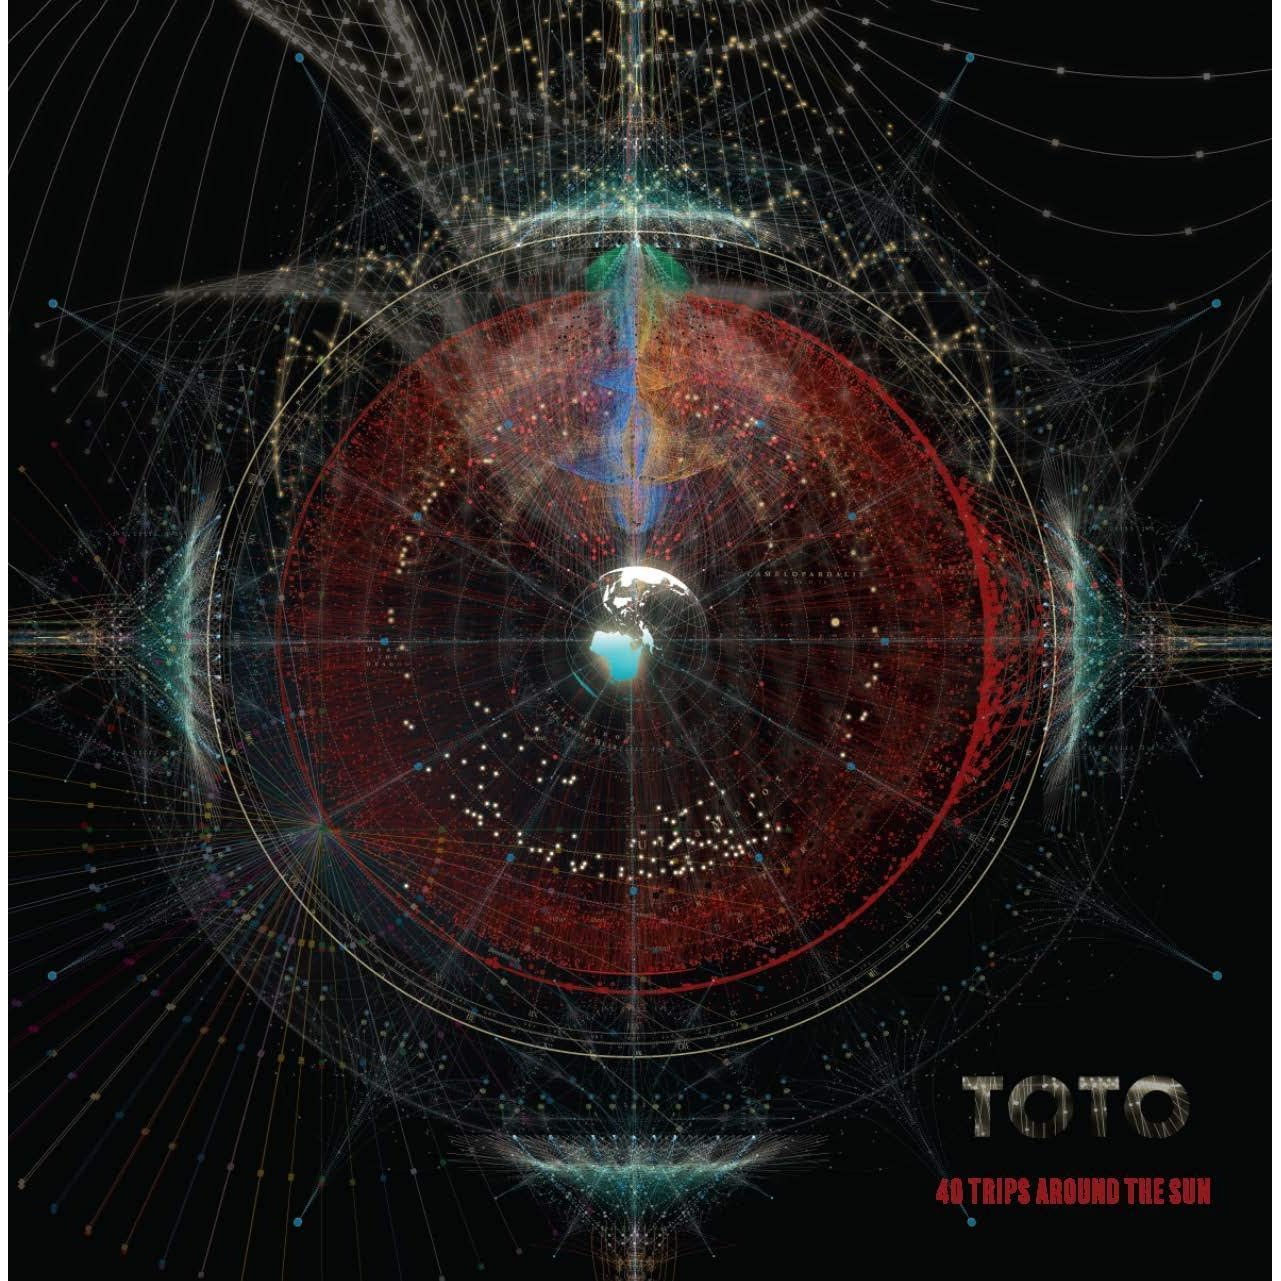 Toto - 40 Trips around the sun - Vinyl Record Australia